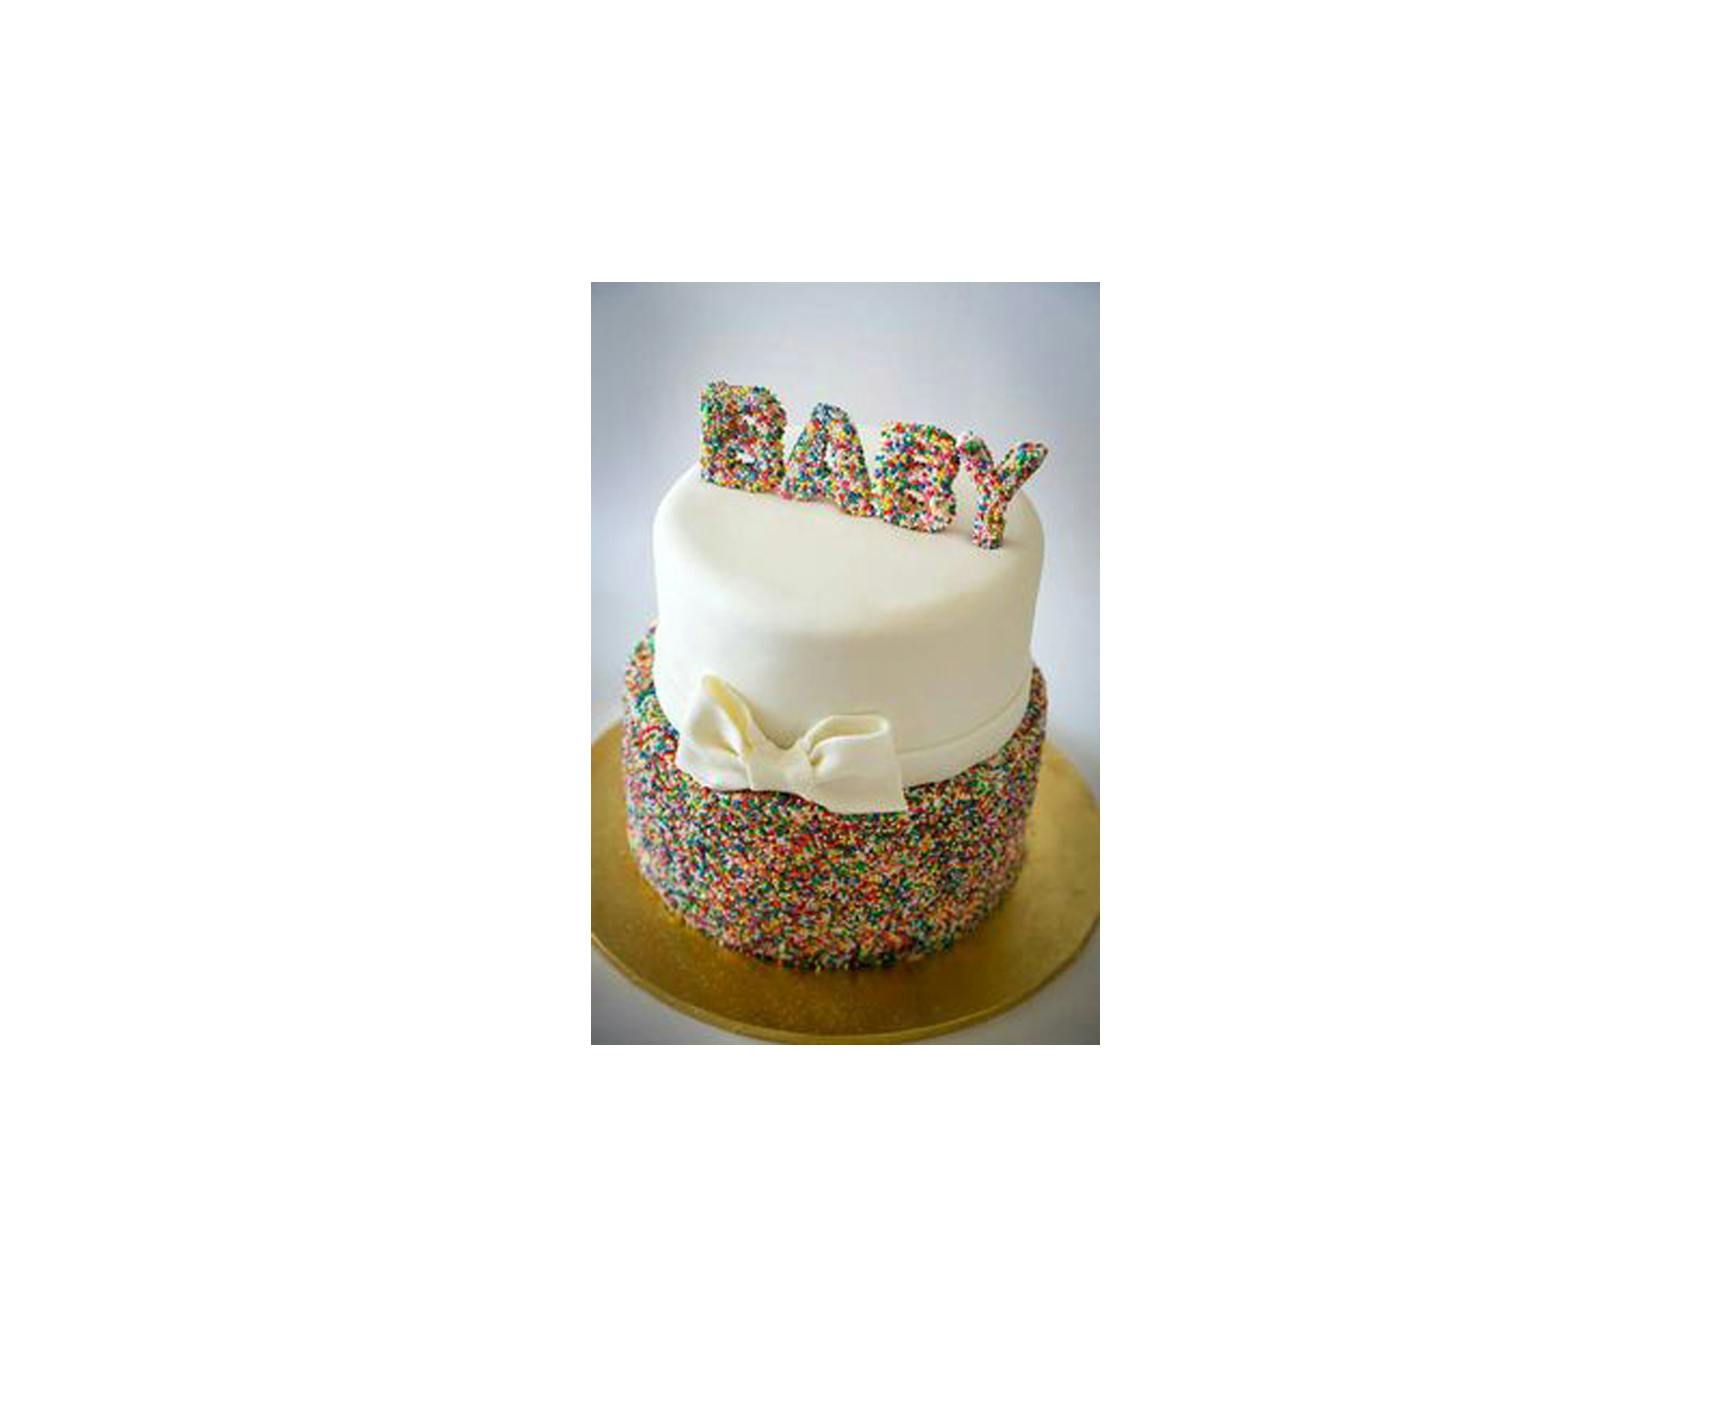 Ideas for a Baby Sprinkle Cupcake Bar - Mimi's Dollhouse